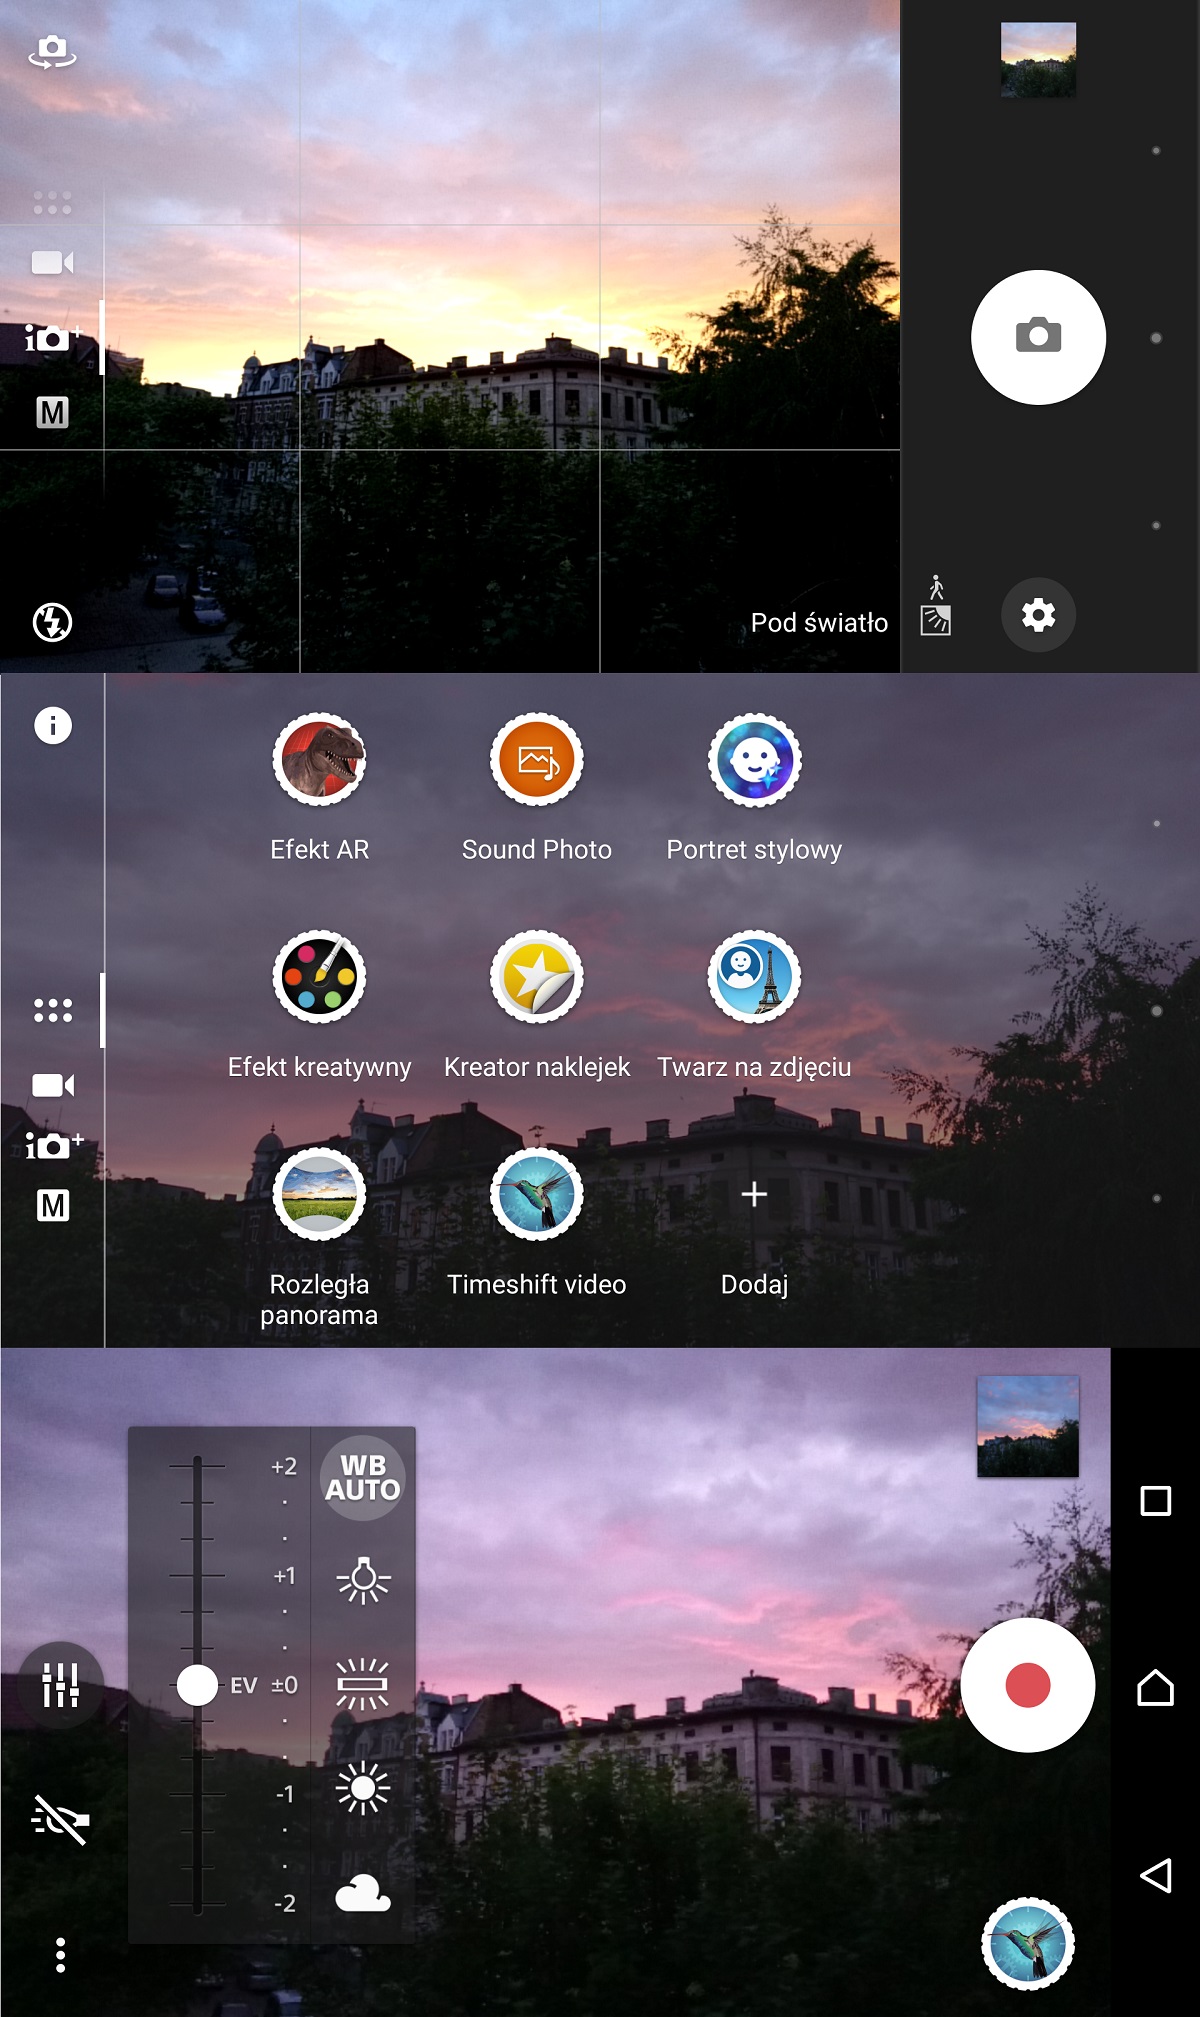 Sony Xperia X (F5121) - wygląd aplikacji Aparatu - recenzja 90sekund.pl